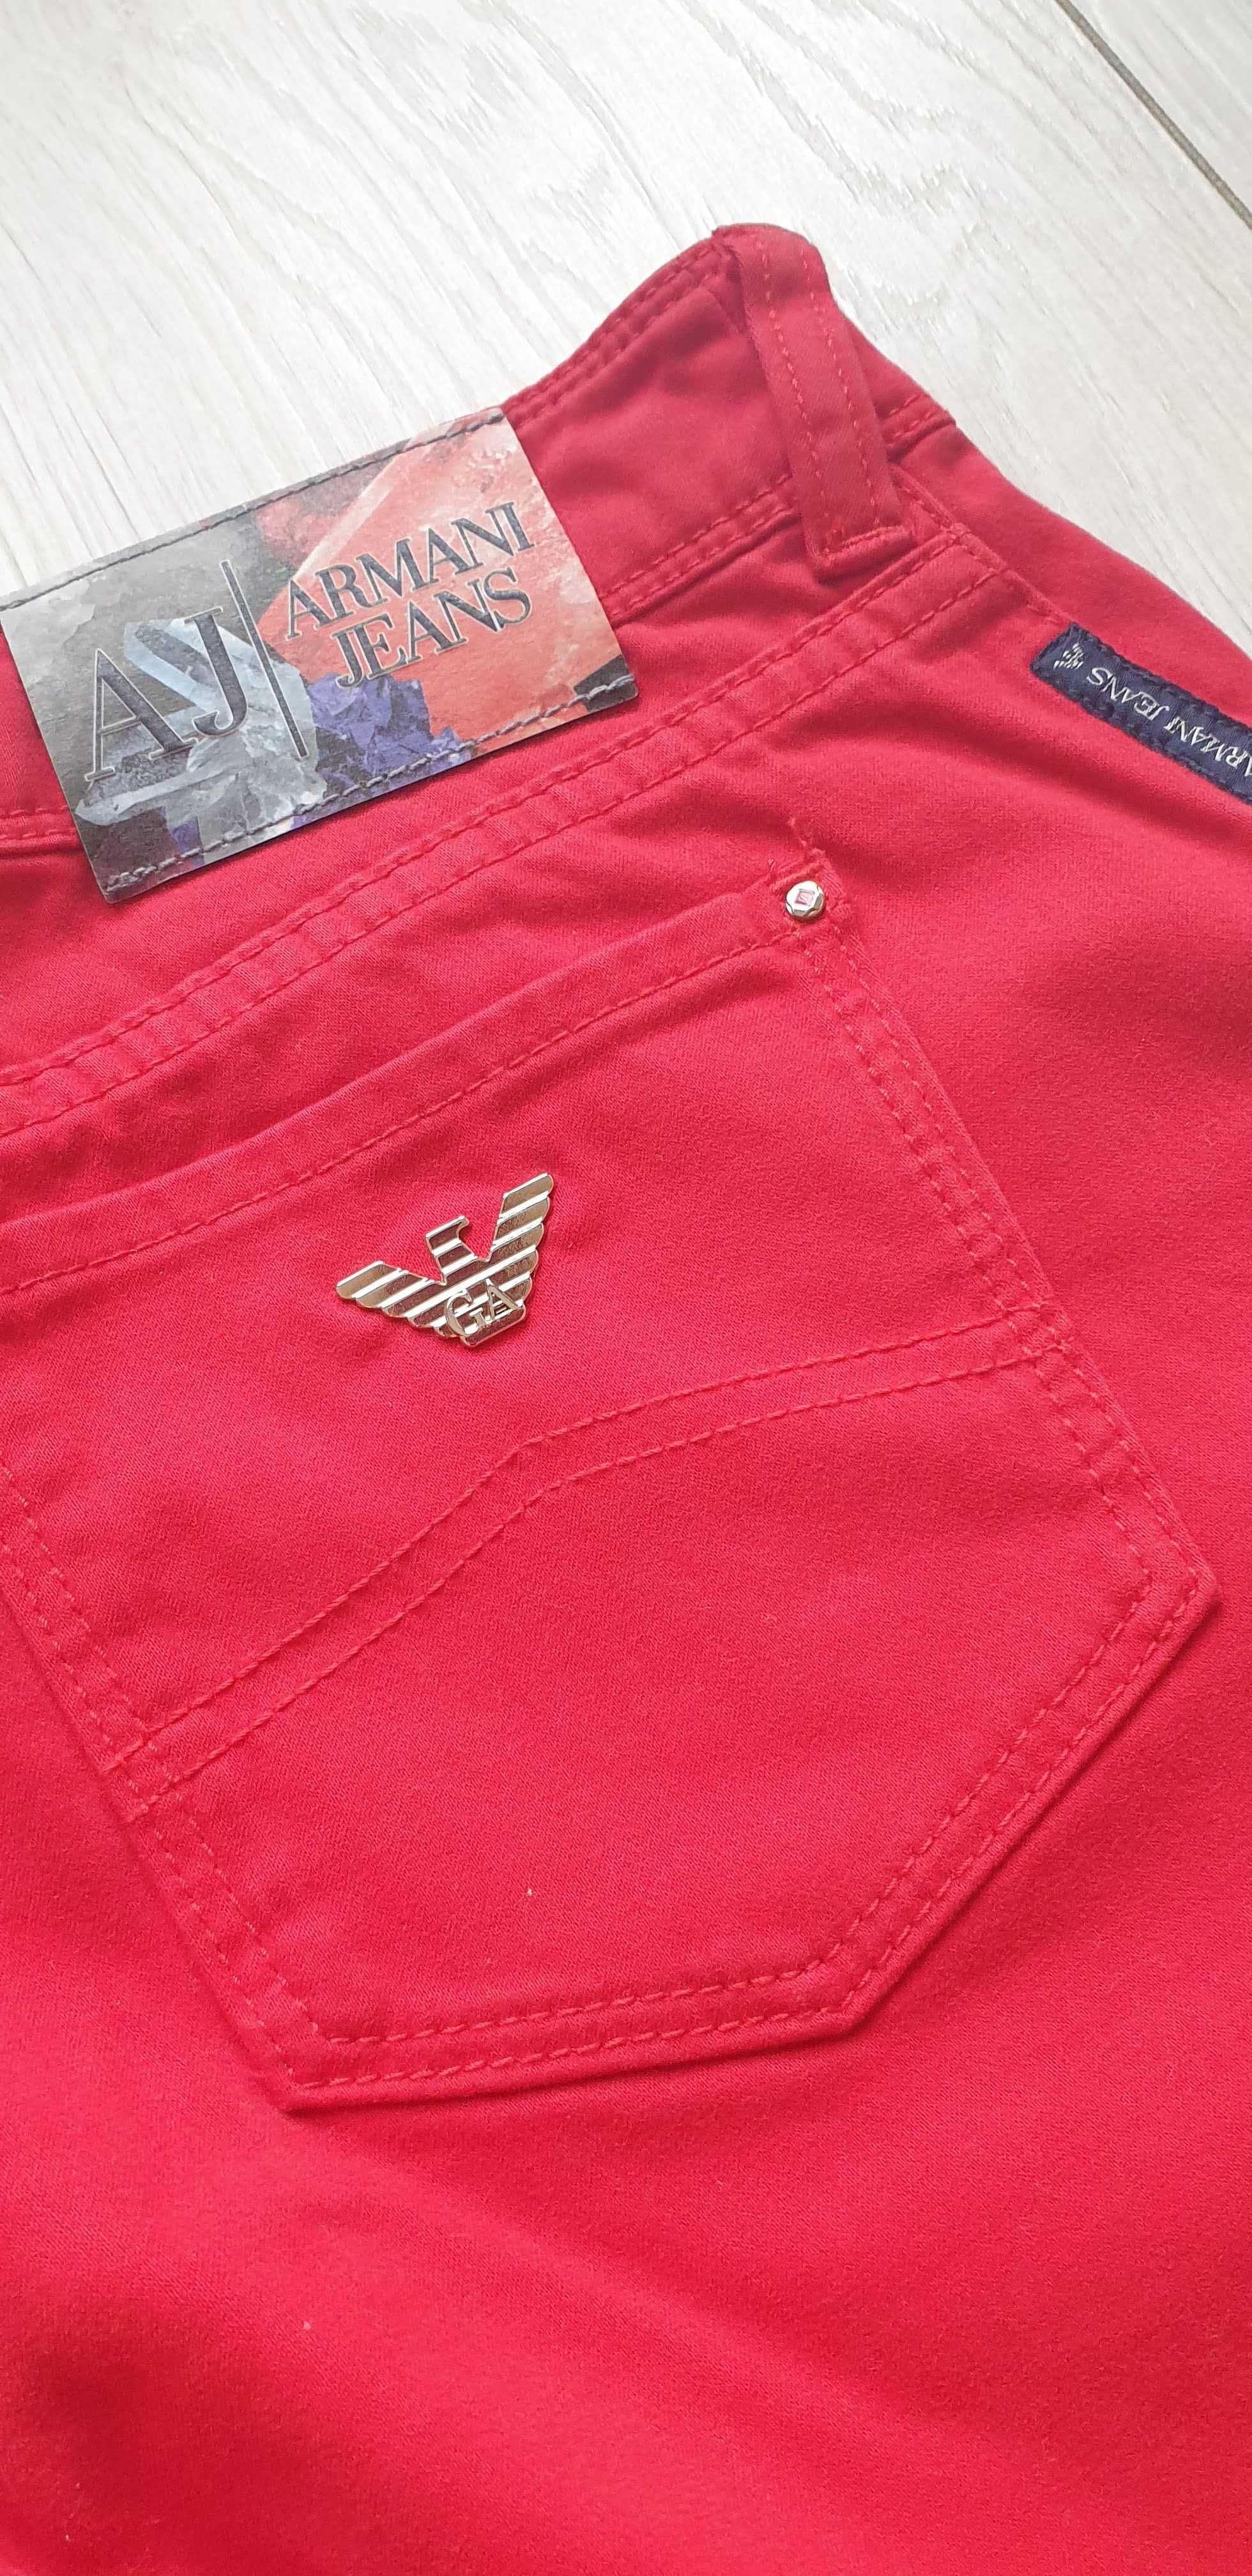 Червени дънки Armani Jeans, размер 25